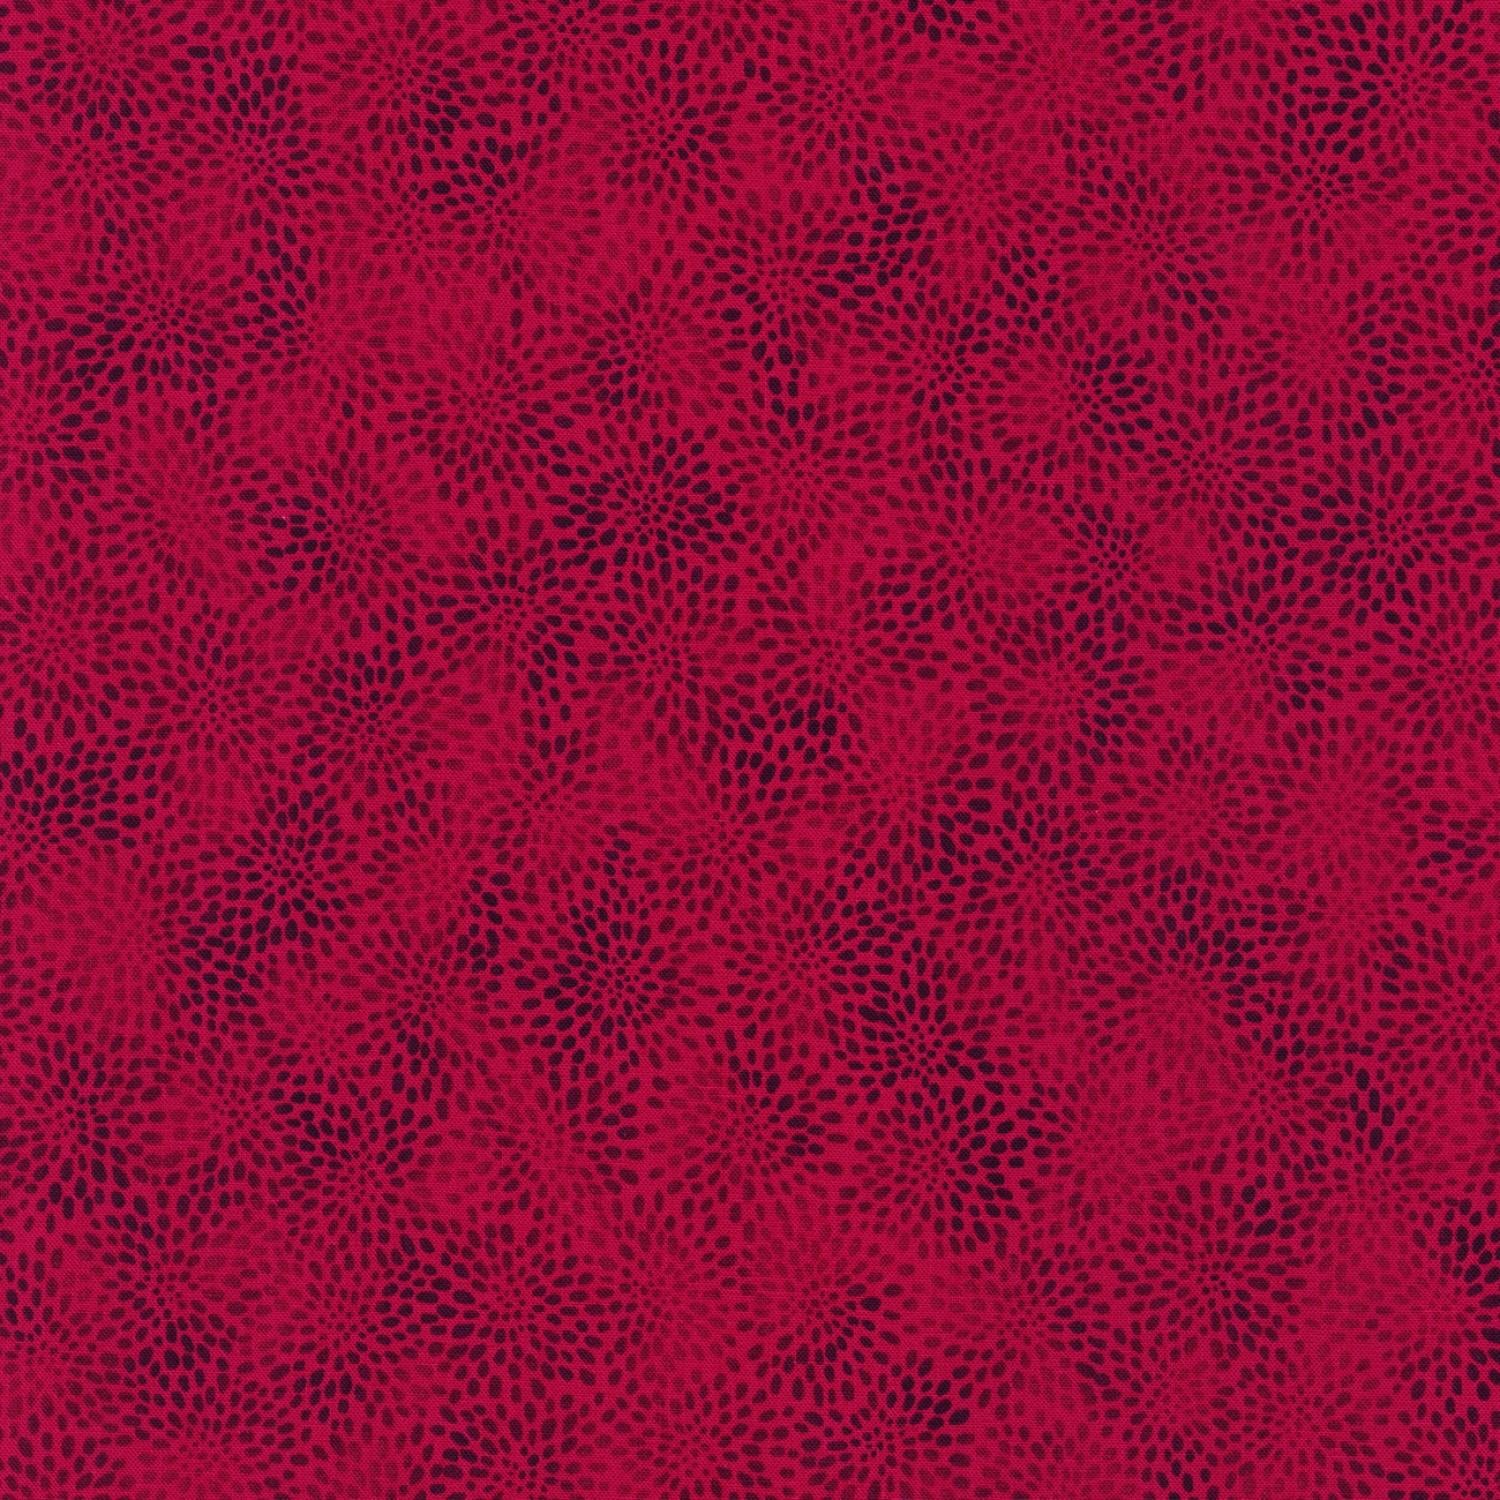 Fusions Petals - Cranberry - 21321-113